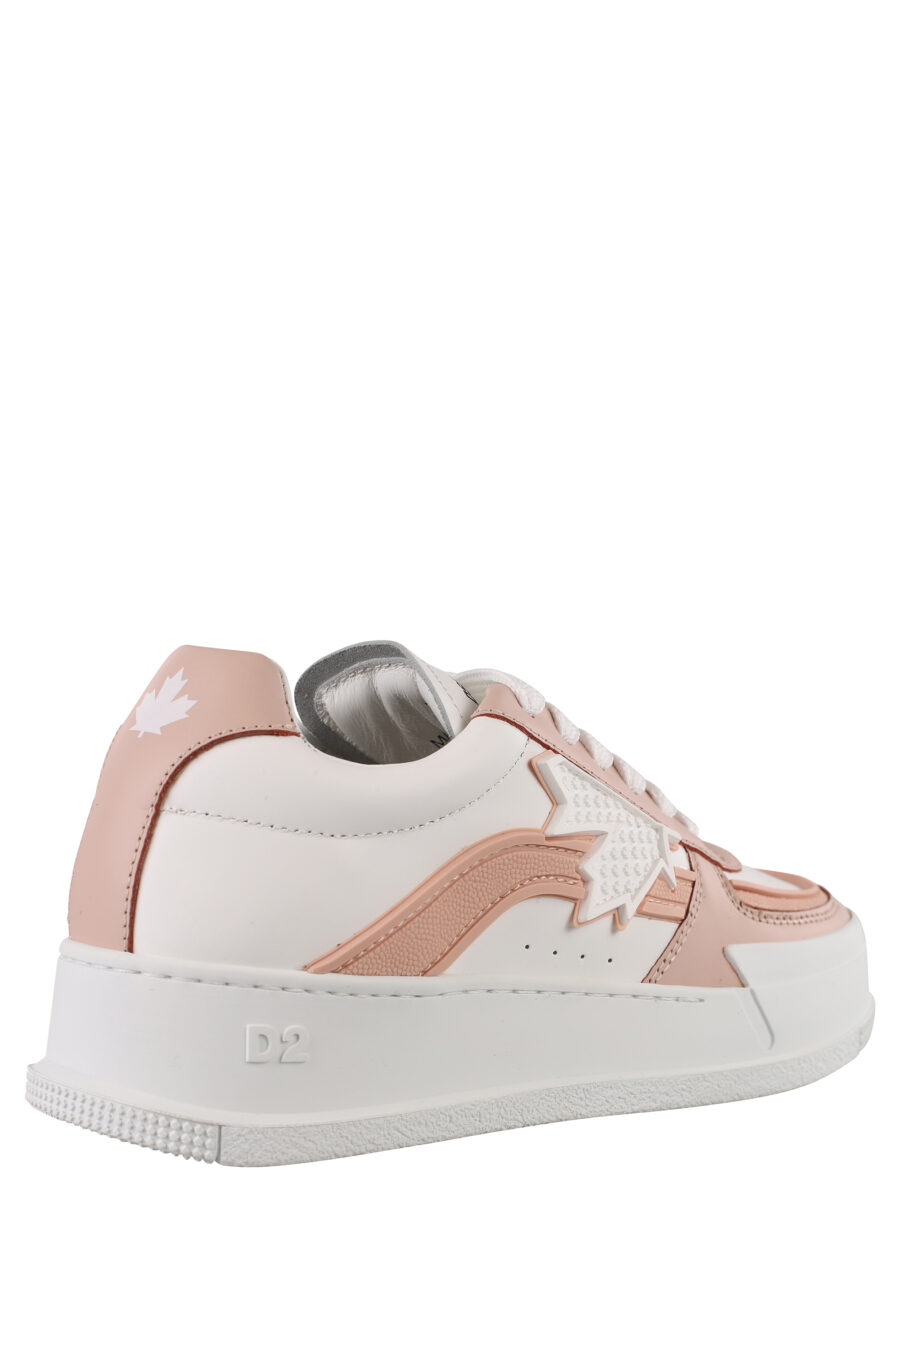 Zapatillas blancas de plataforma con detalle rosa - IMG 1175